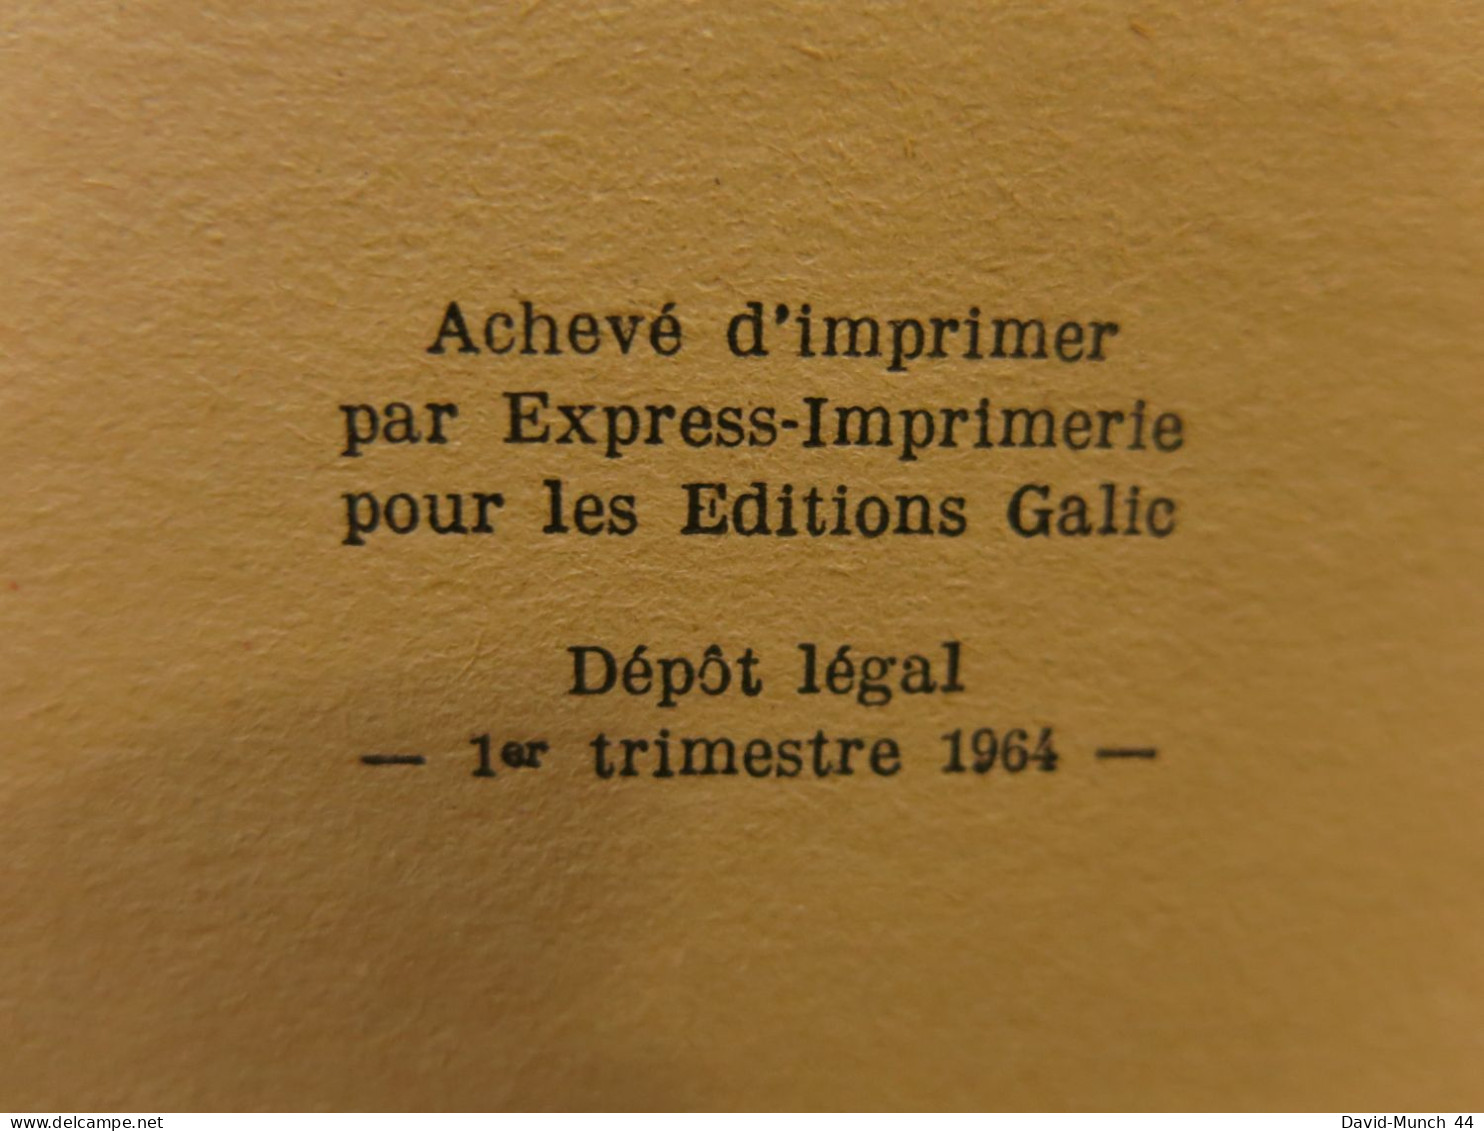 La Mort D'Une Etoile de Charles Sylvestre. Galic, Collection "Les Carnets Des Services Secrets" N°56. 1964